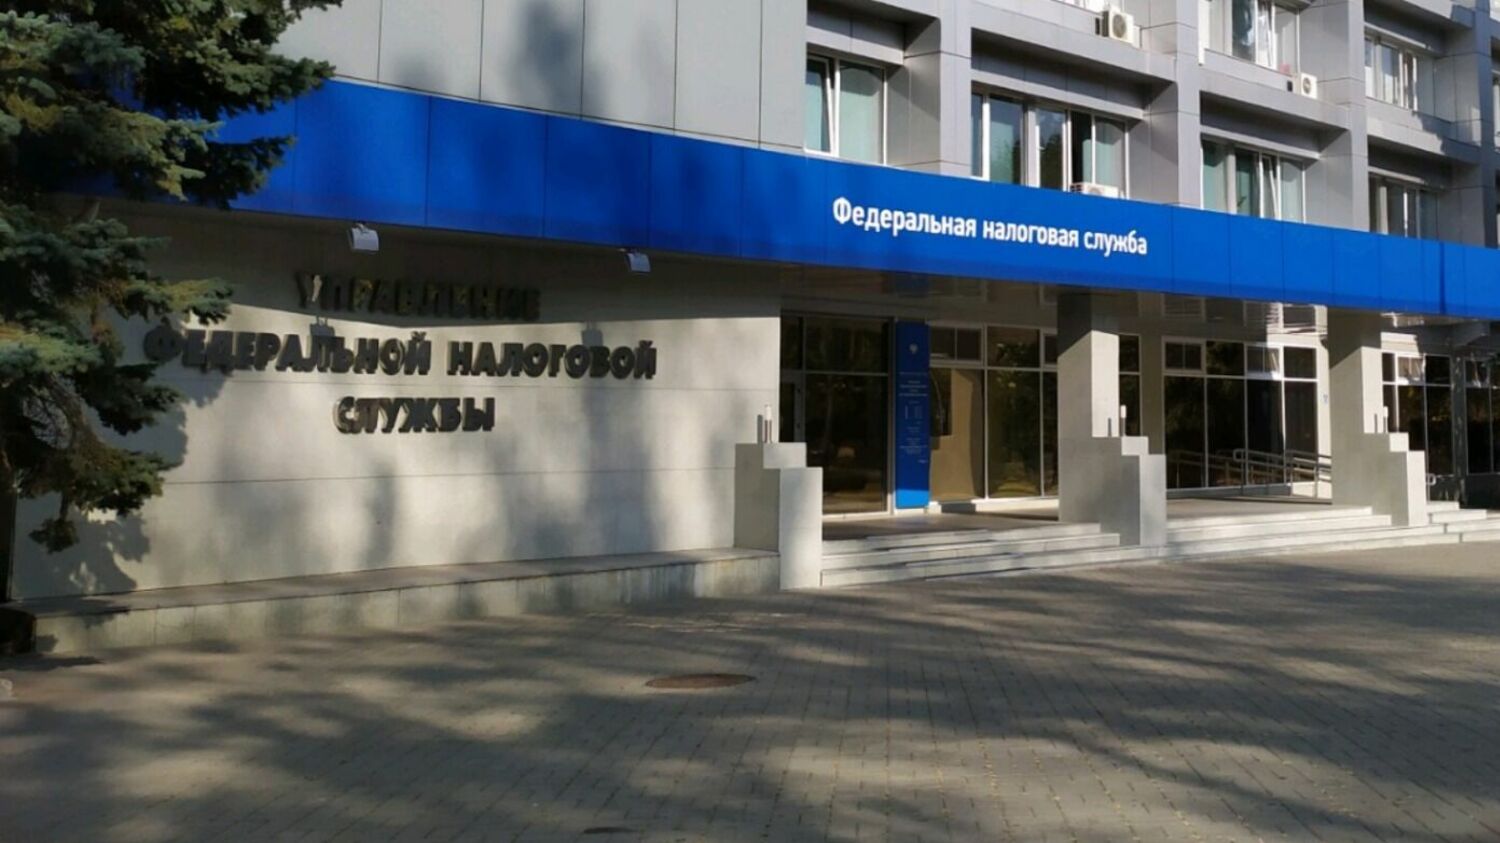 Заявителем выступает управление Федеральной налоговой службы по Ставропольскому краю. Поводом стало наличие задолженности перед бюджетами в размере 46,9 млн рублей.